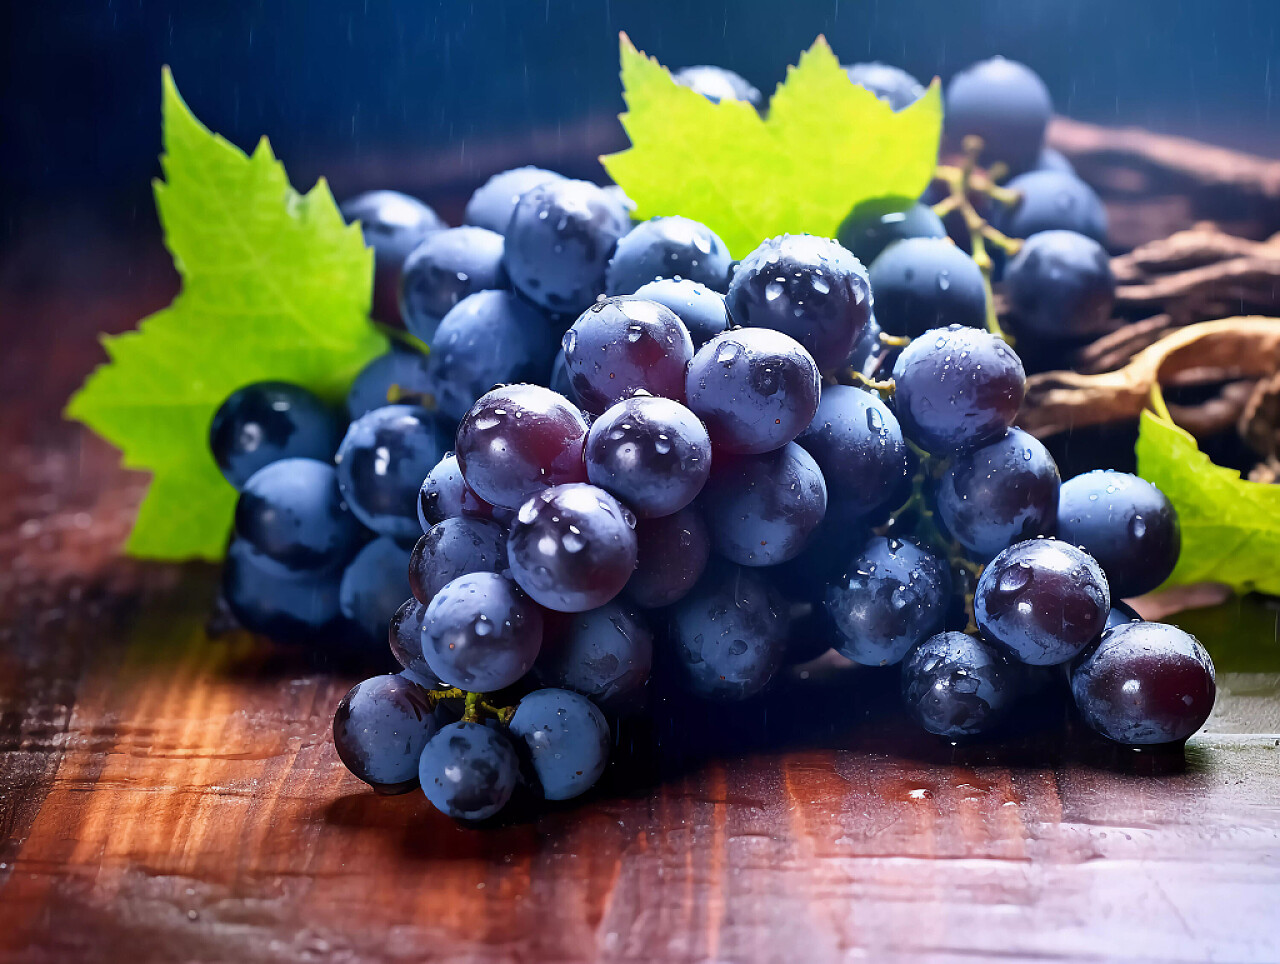 水果电商配图特写风格蓝莓葡萄产品展示场景